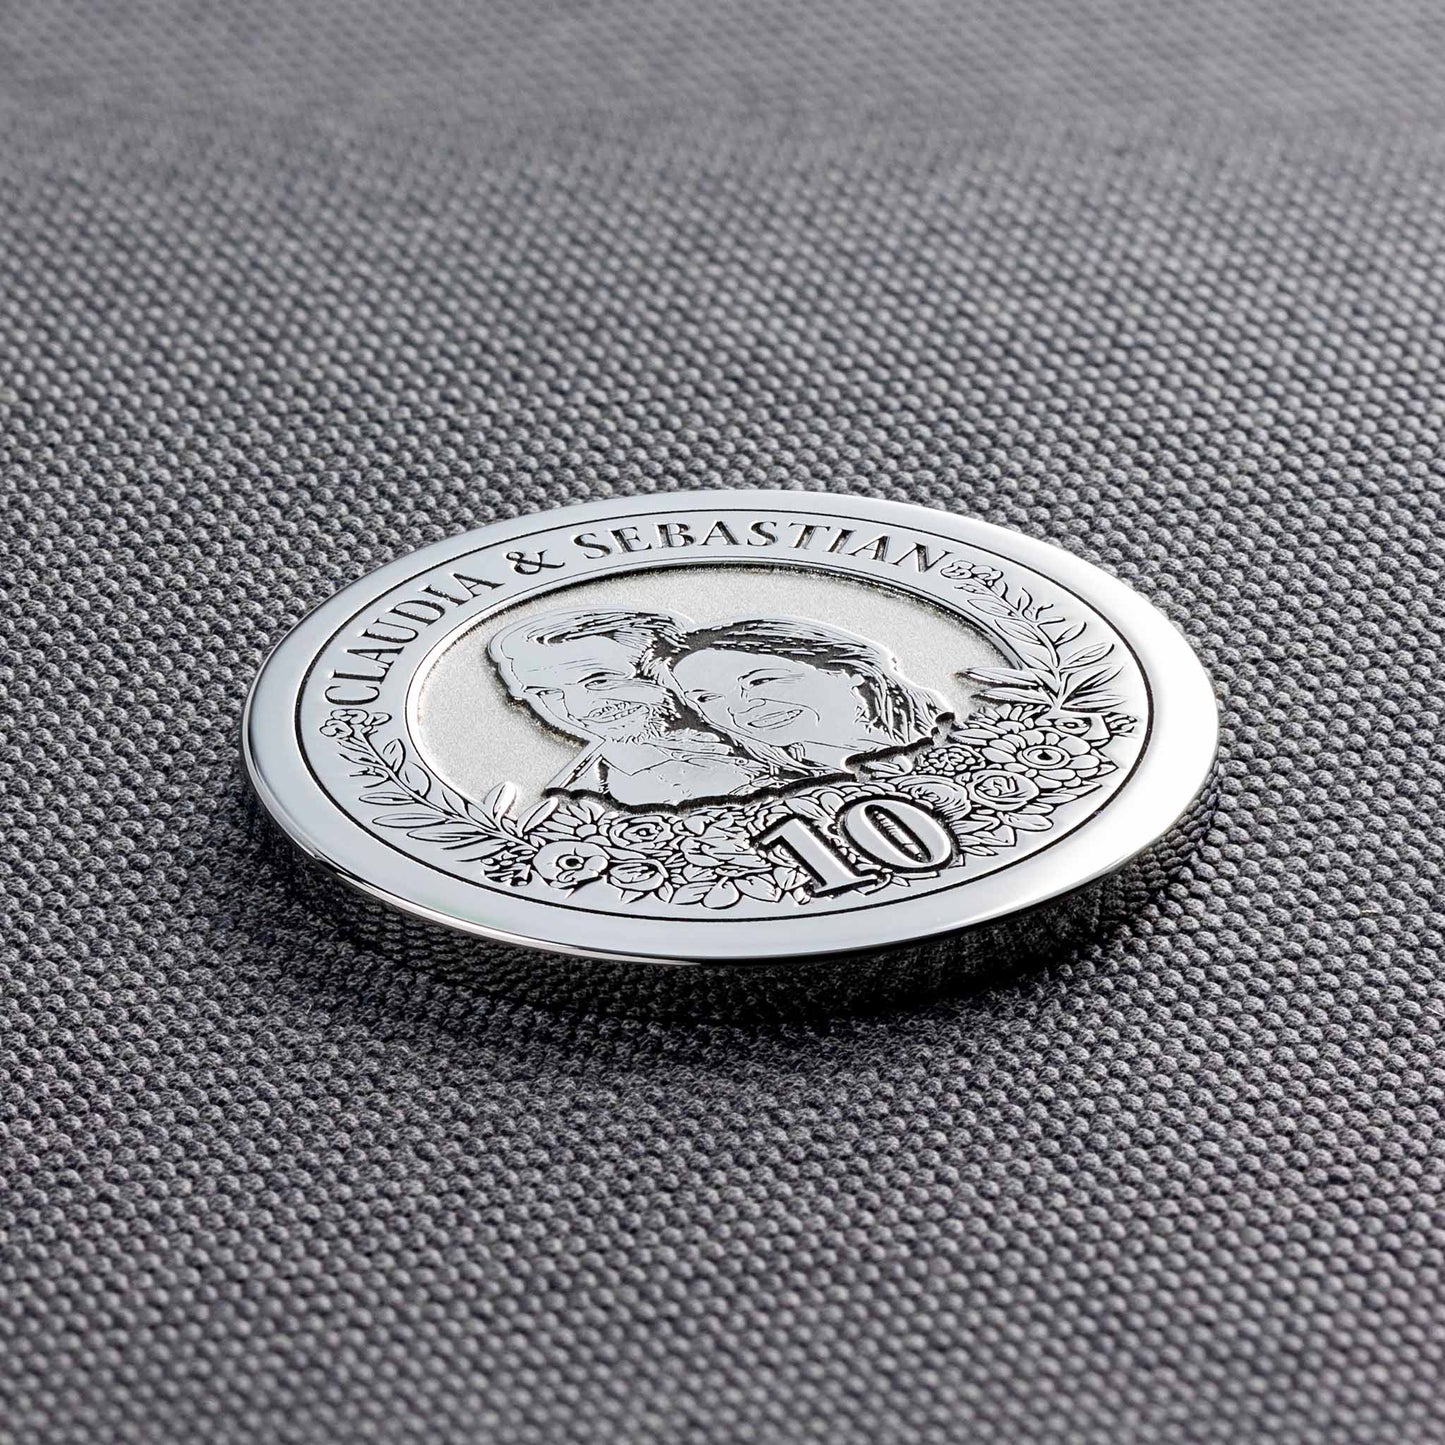 10 jahrestag geschenk - Personalisierte Münze